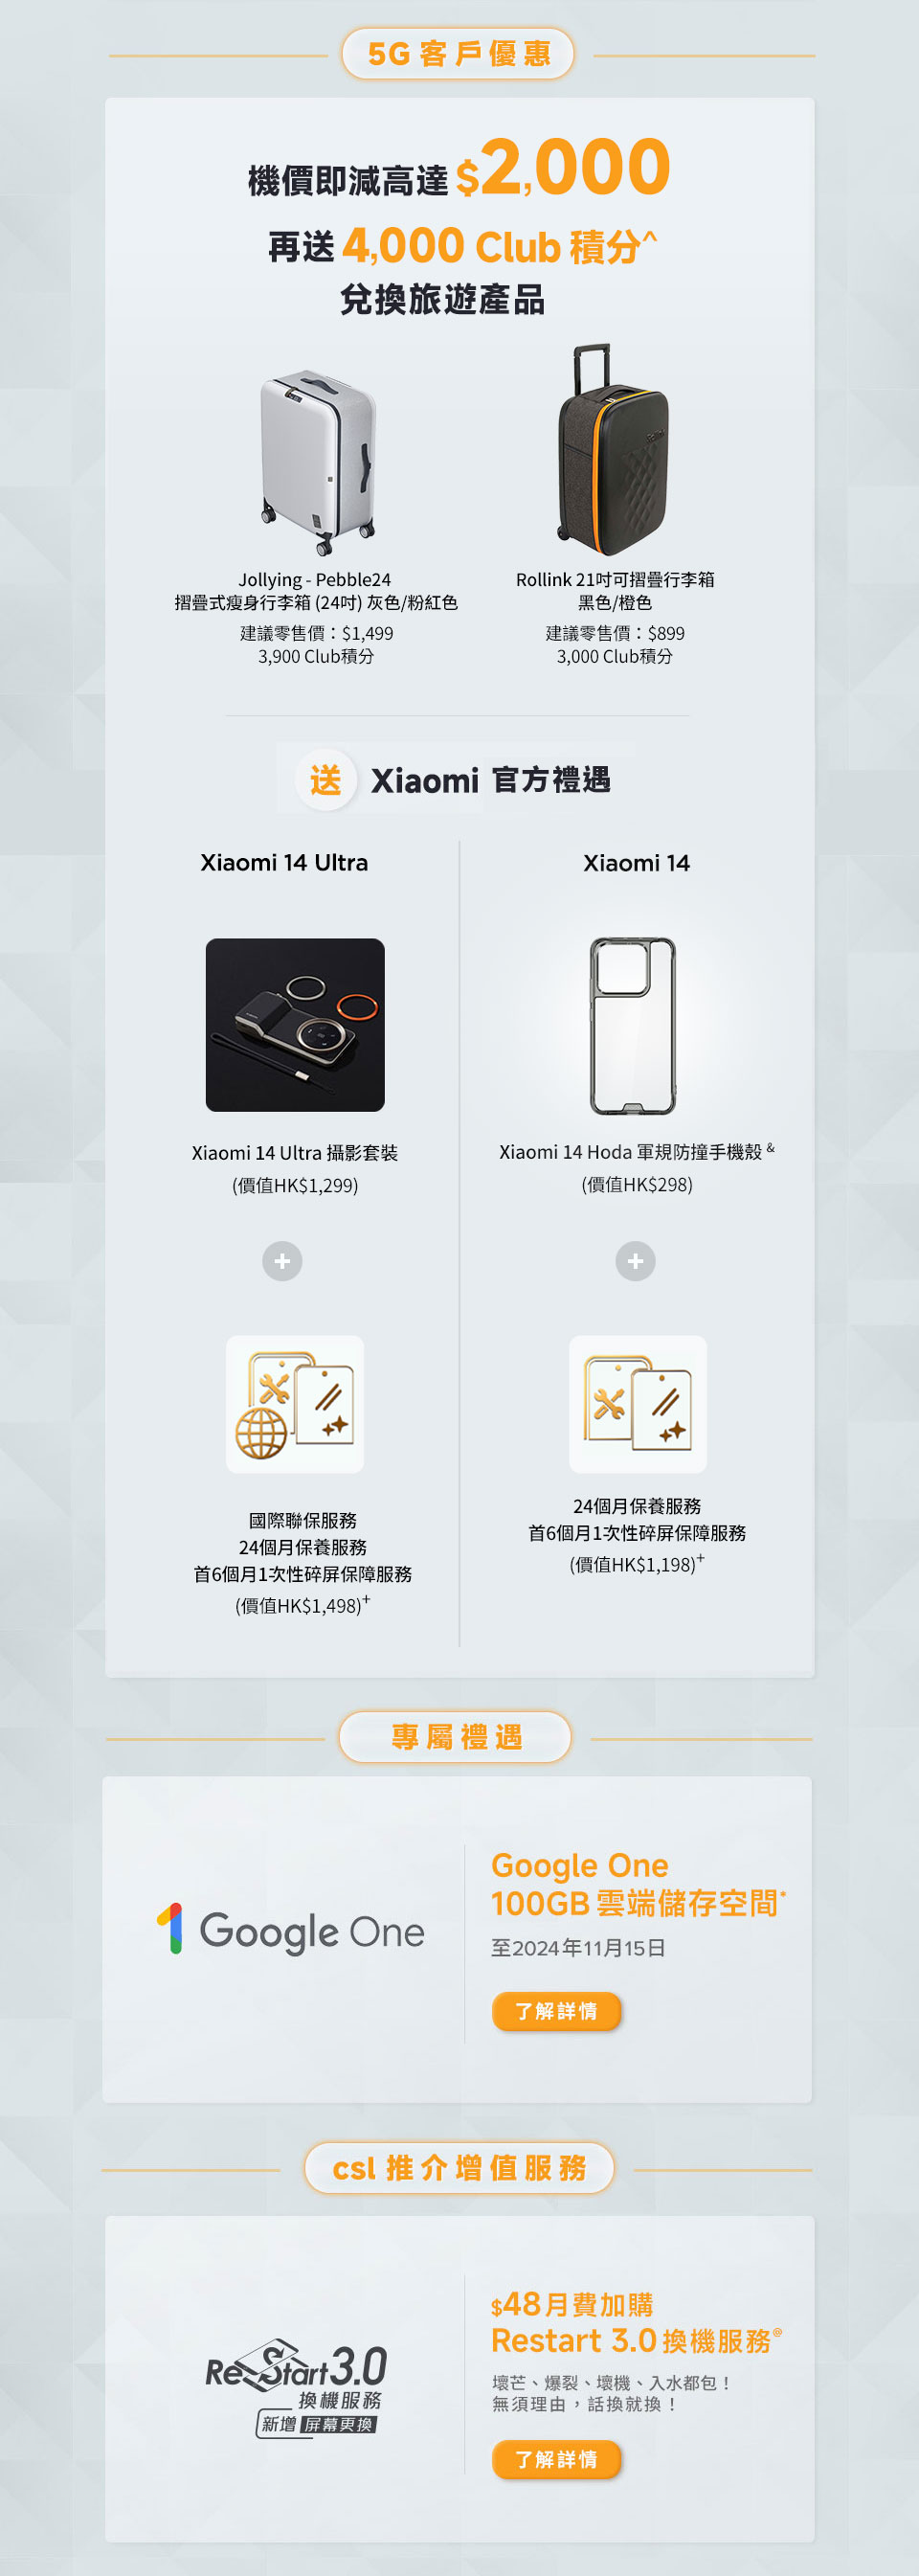 Xiaomi 14 Series - 5G 客戶優惠